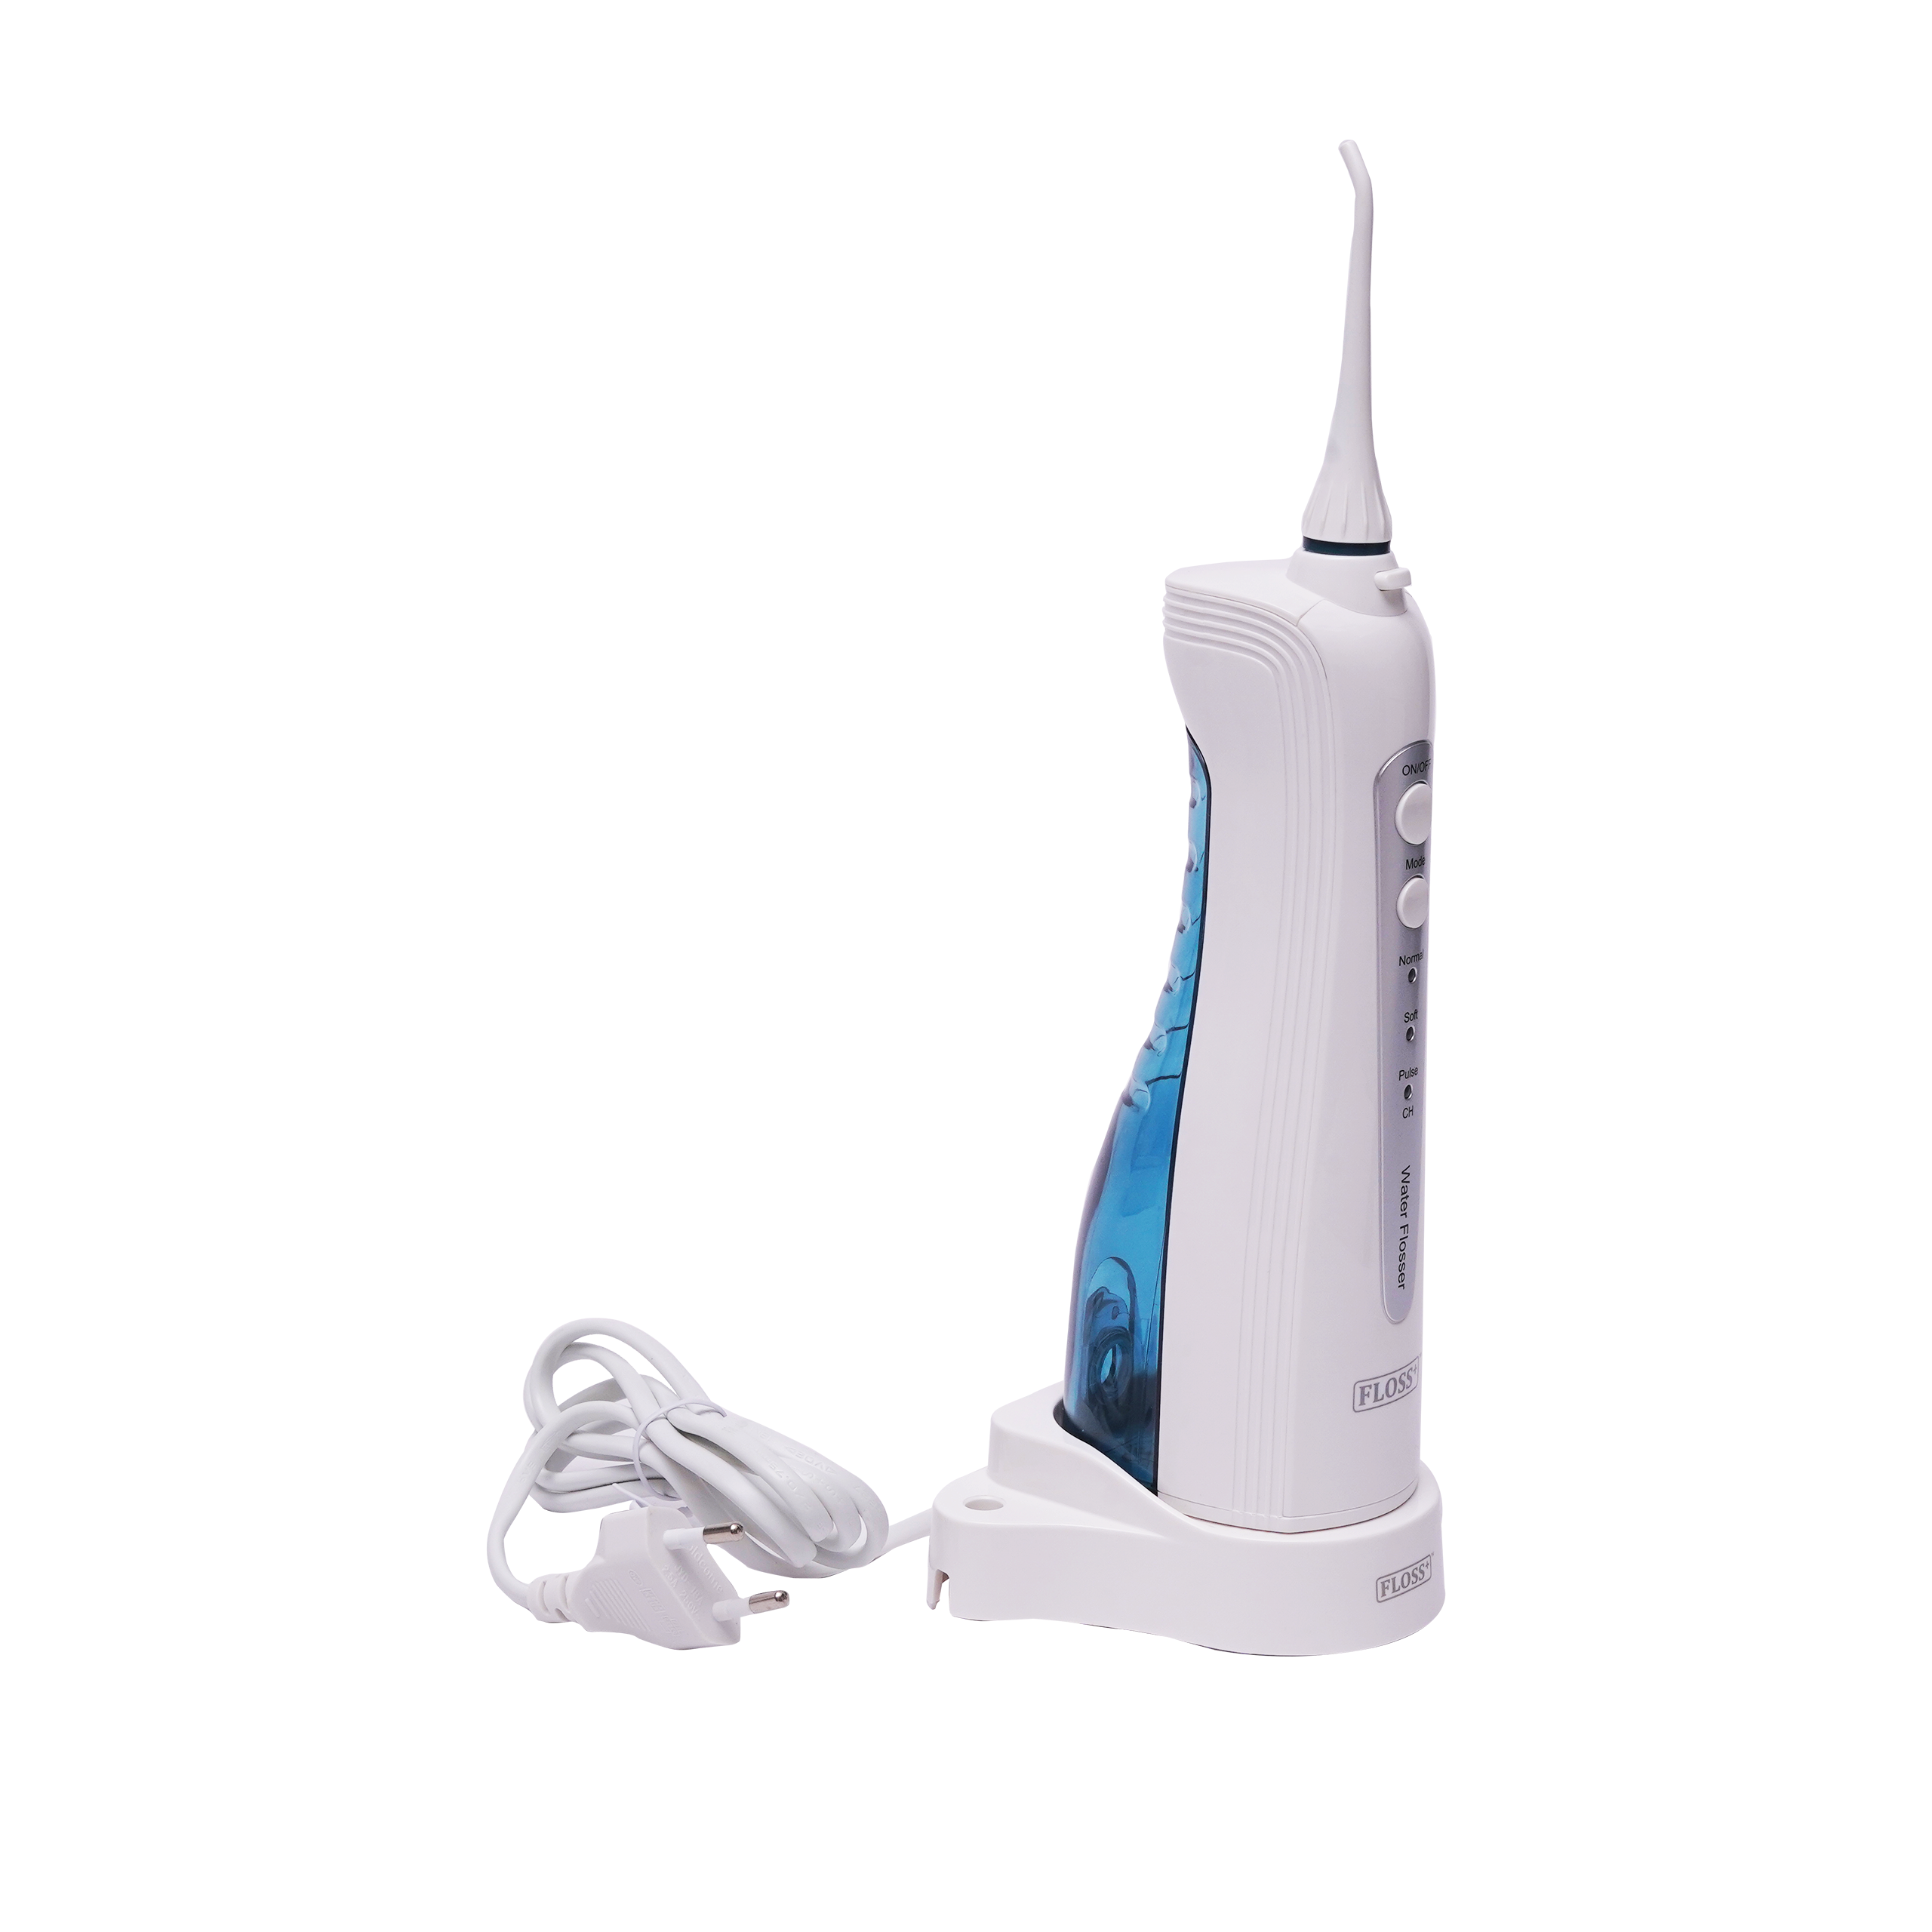 Nirmala Dental Wireless Water Flosser